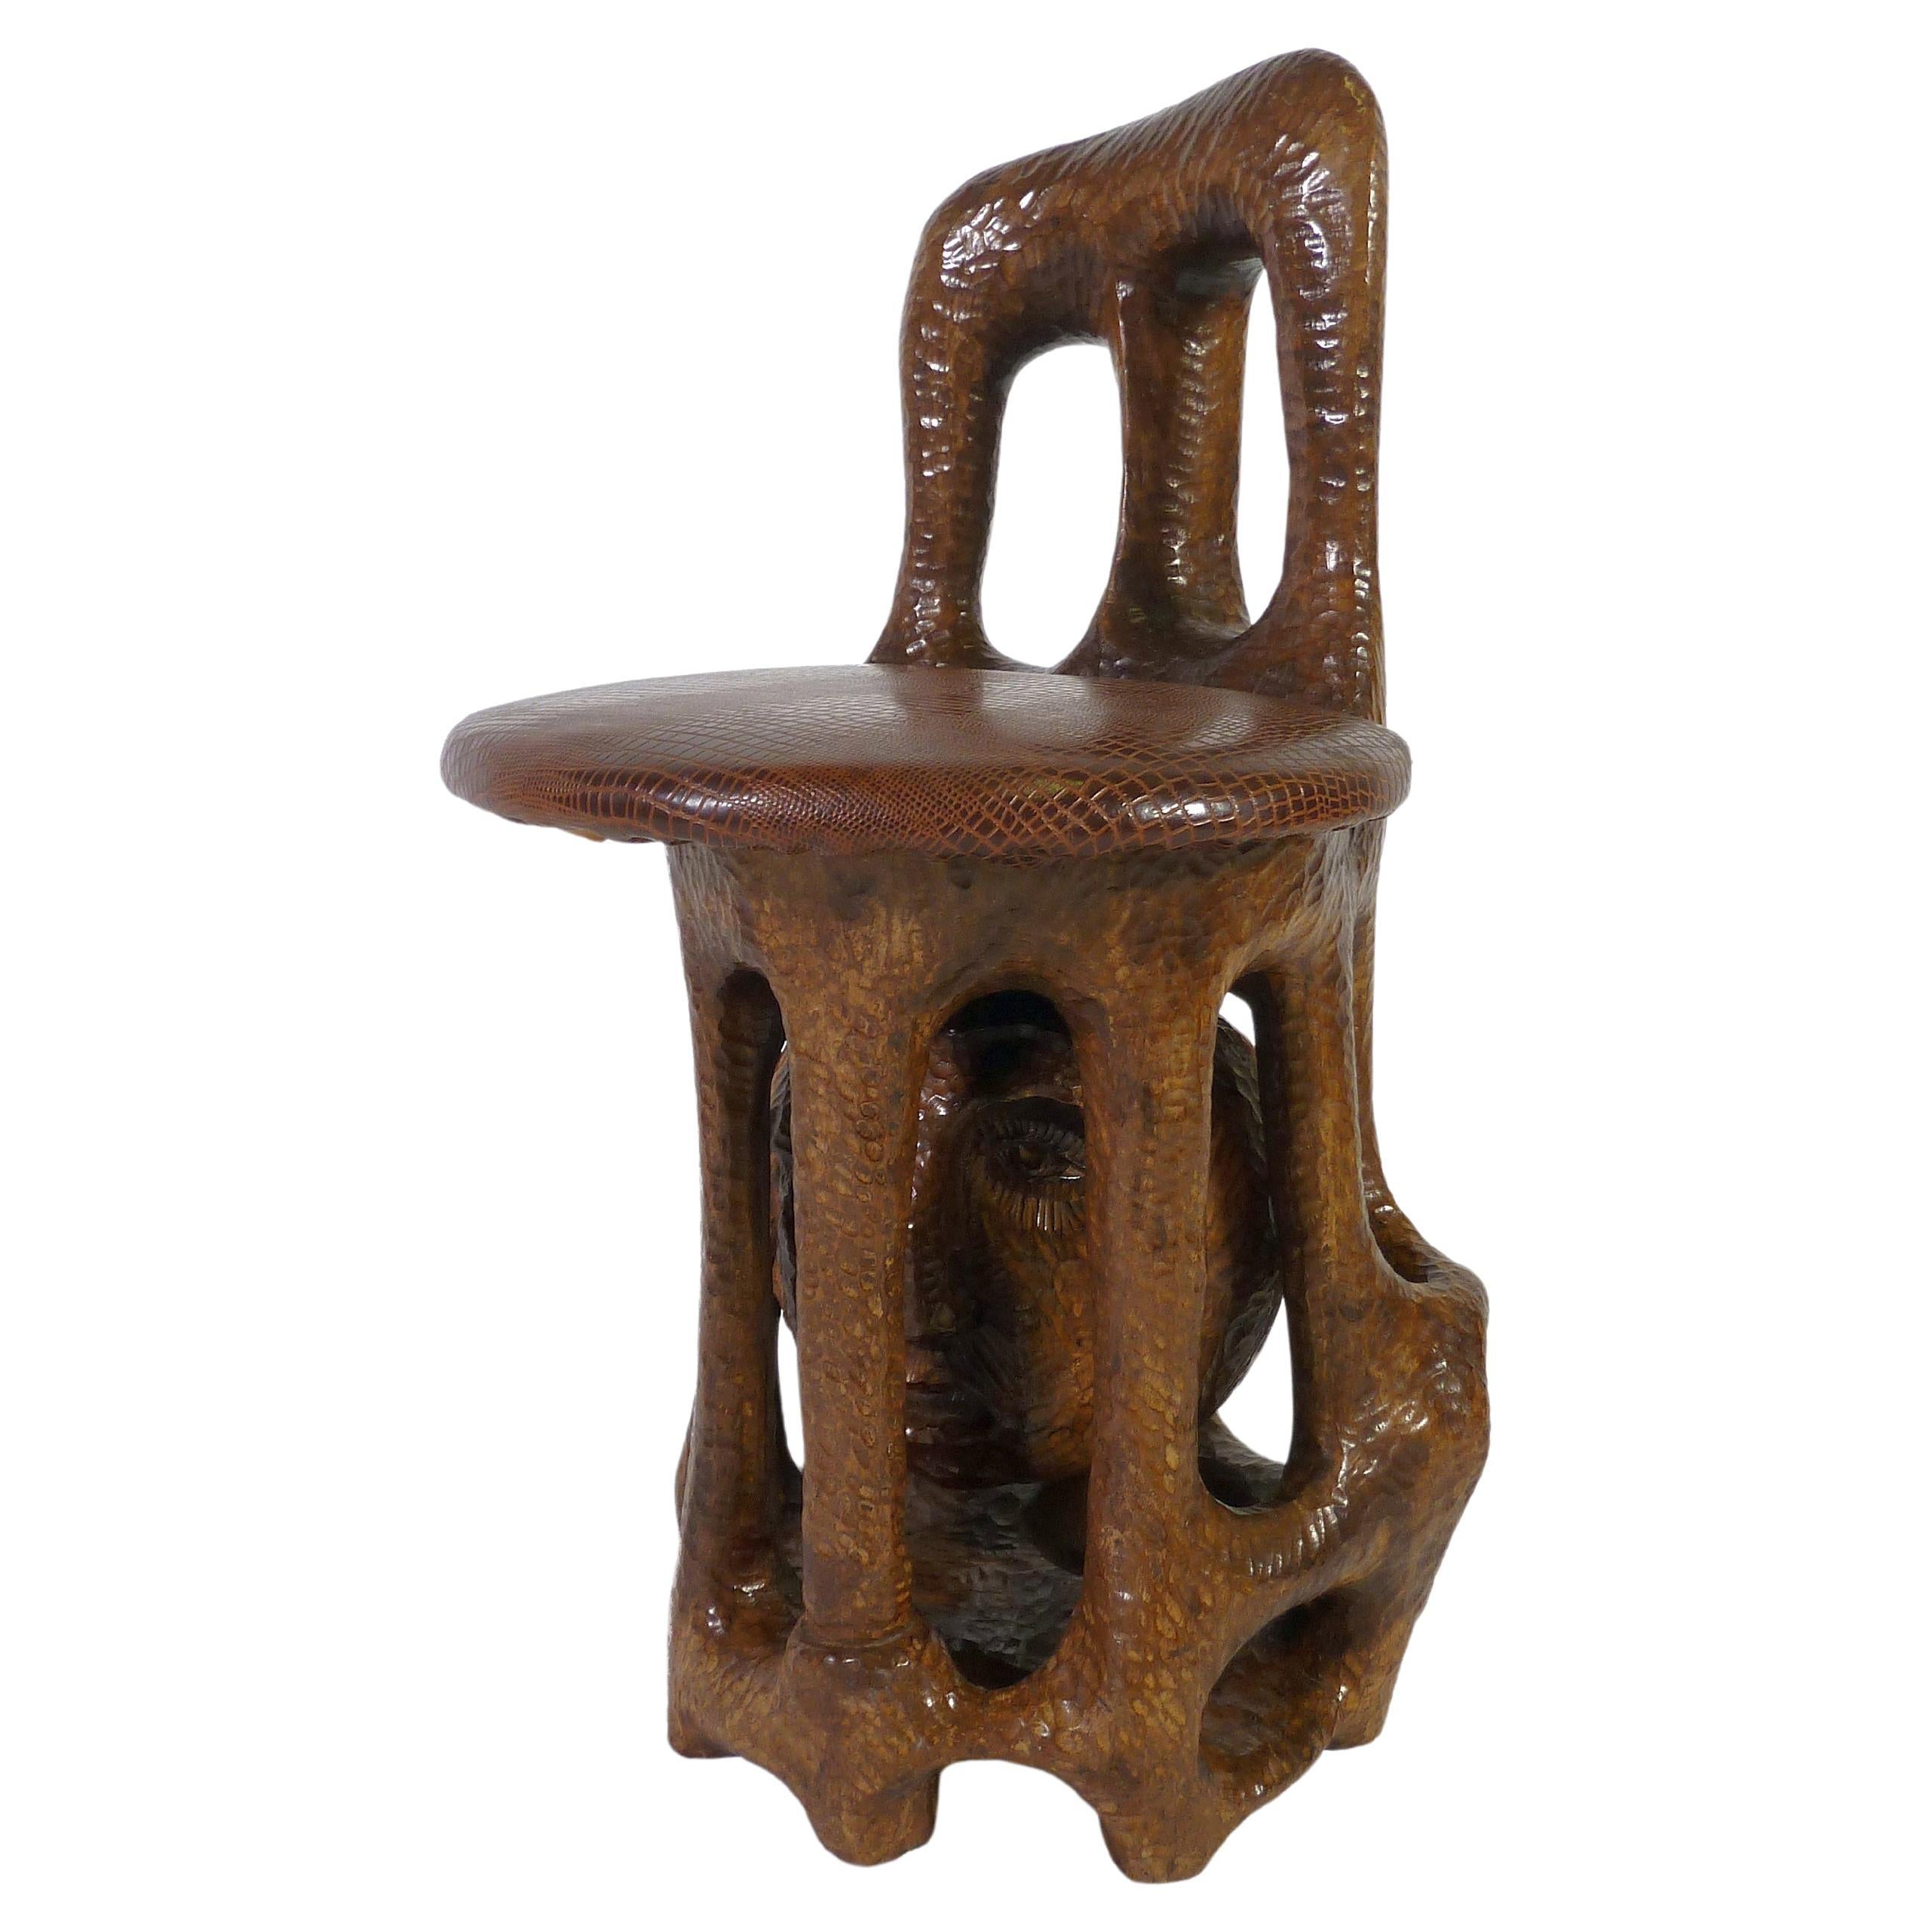 Sol Garson Signed Sculptural Chair 1970s Art Hand Carved Wood Sculpture Mandela For Sale